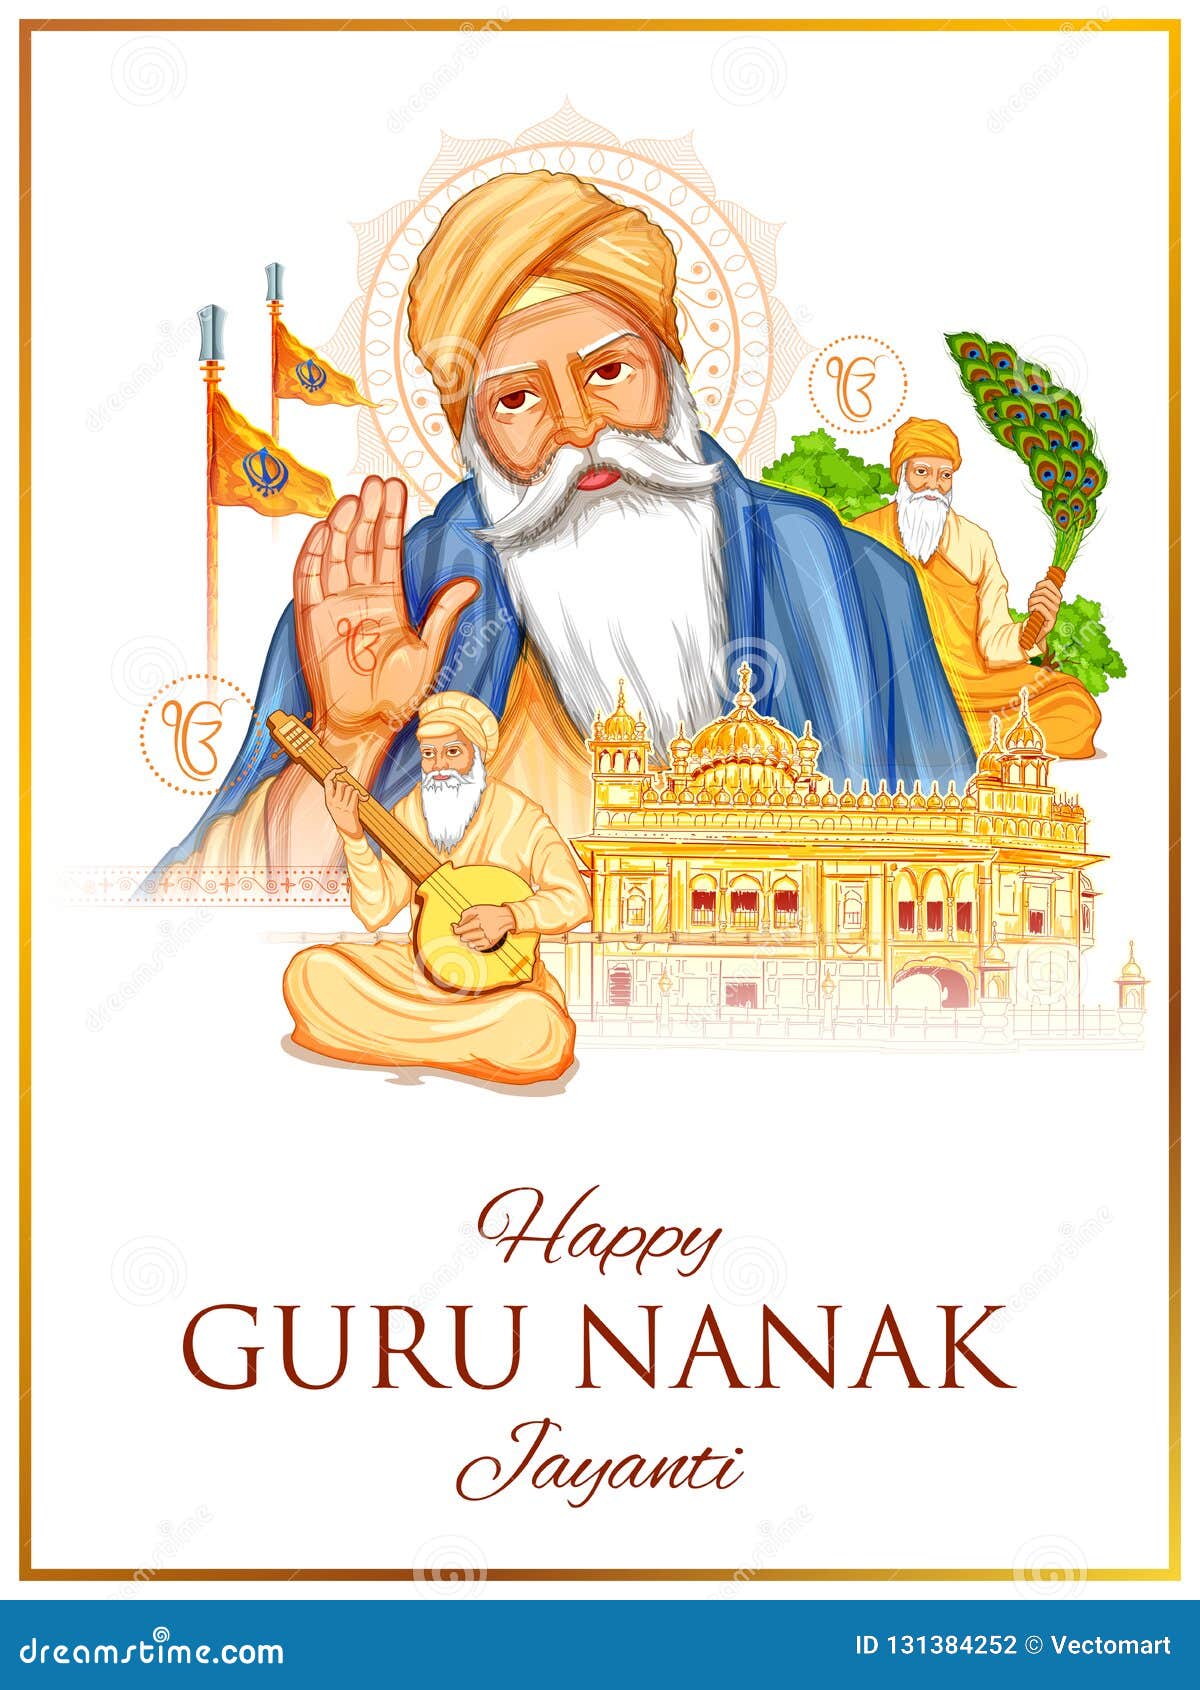 happy gurpurab, guru nanak jayanti festival of sikh celebration background